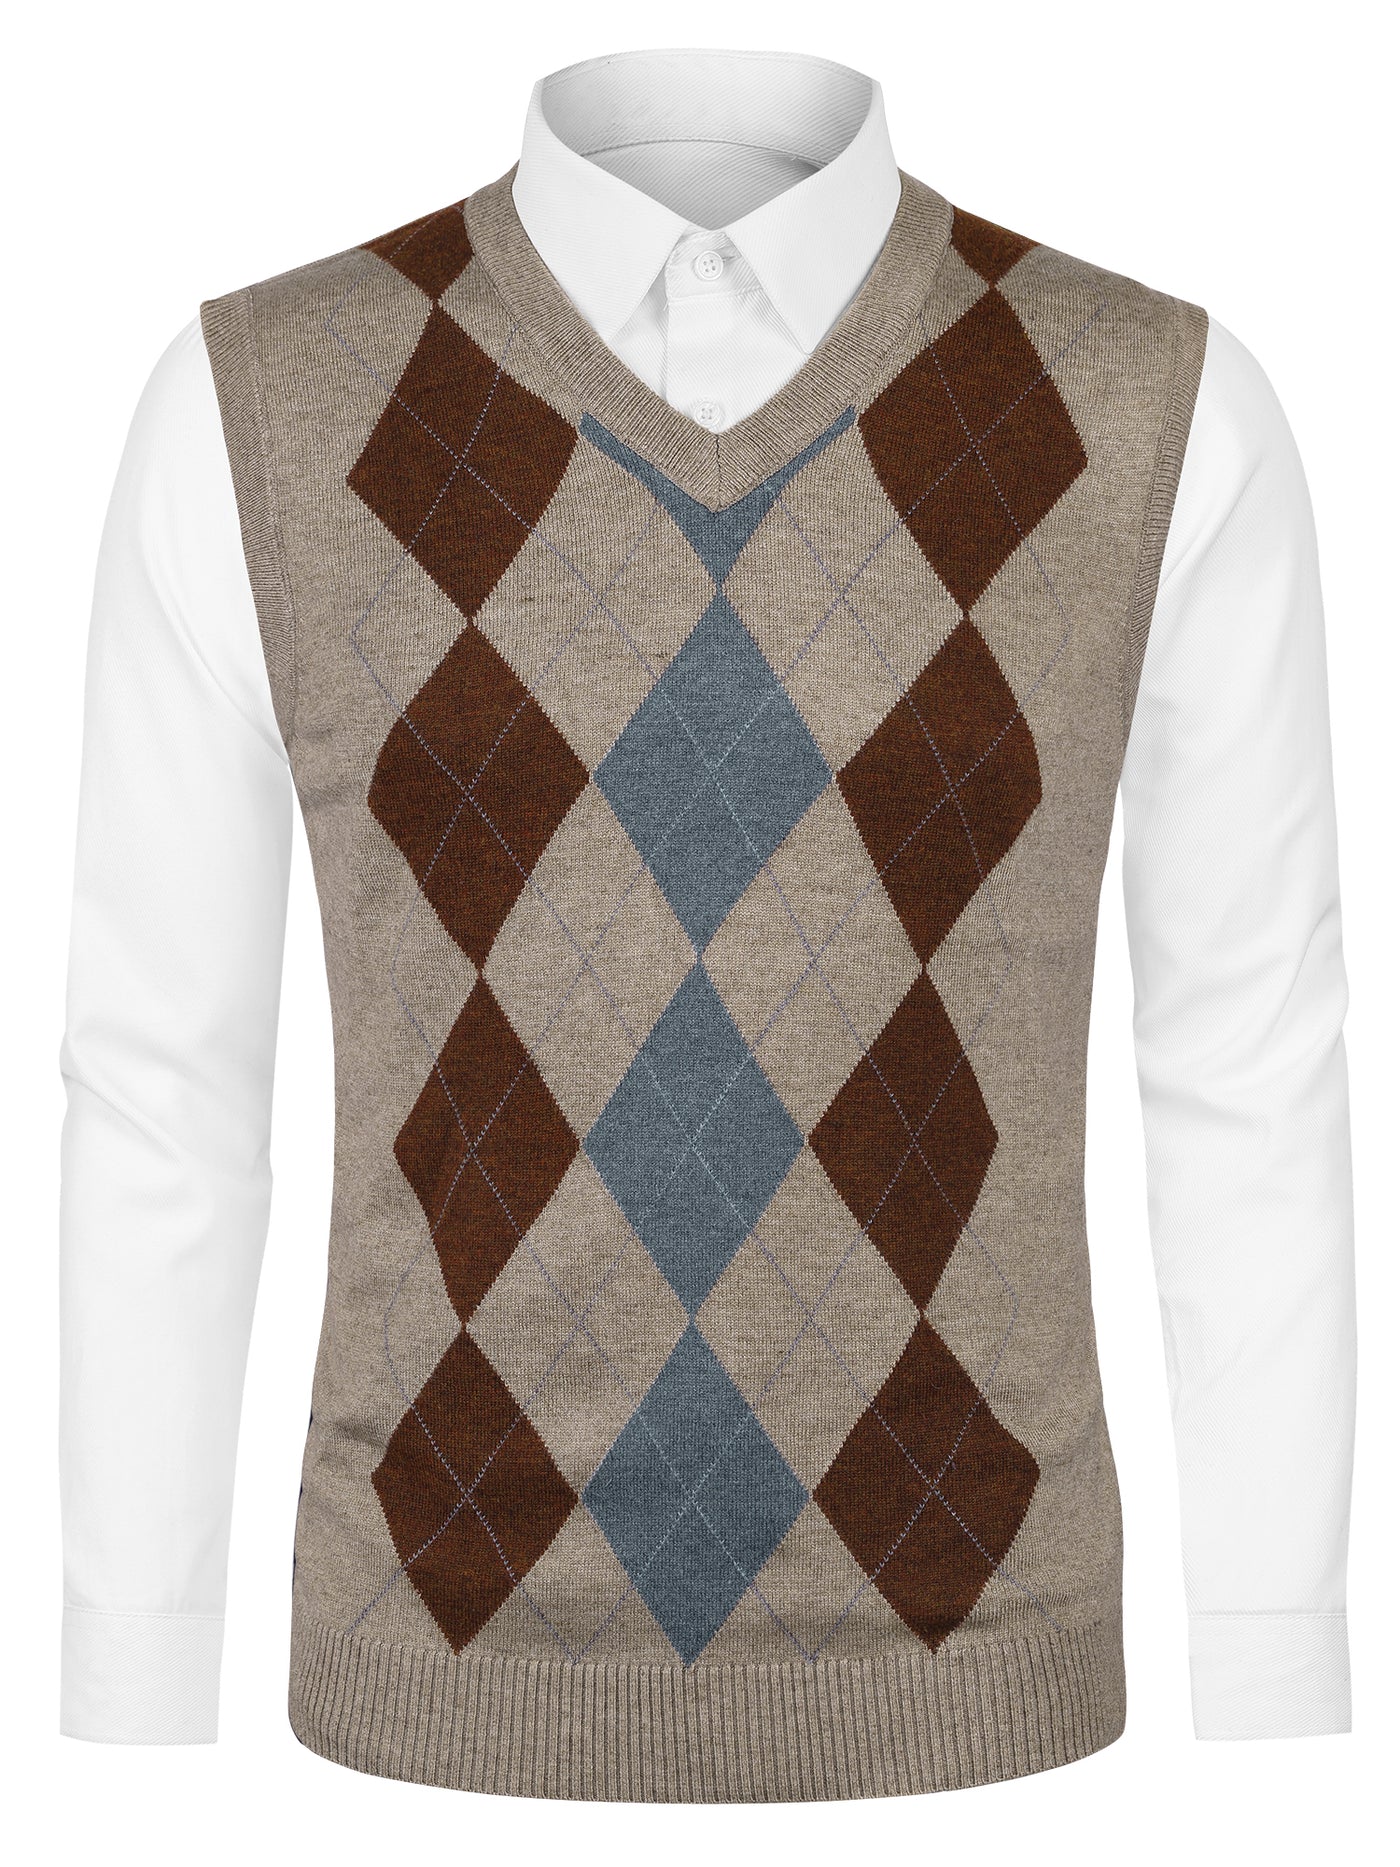 Bublédon Casual V Neck Sleeveless Argyle Knit Sweater Vest